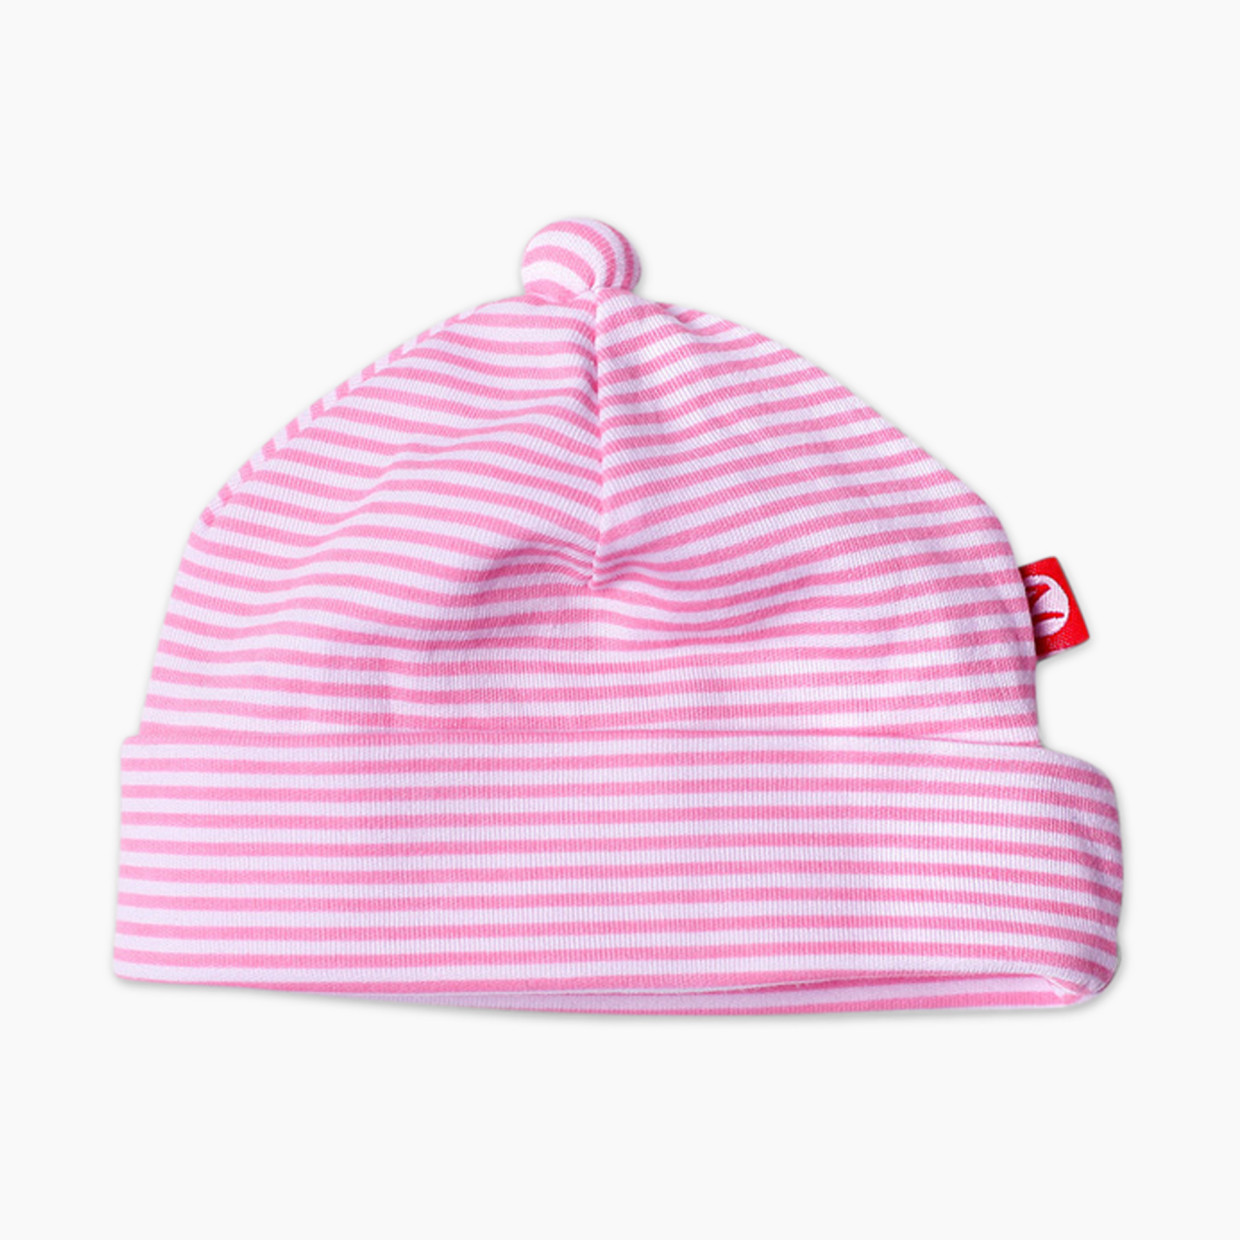 Zutano Candy Stripe Cotton Hat - Hot Pink, 6-12 Months.